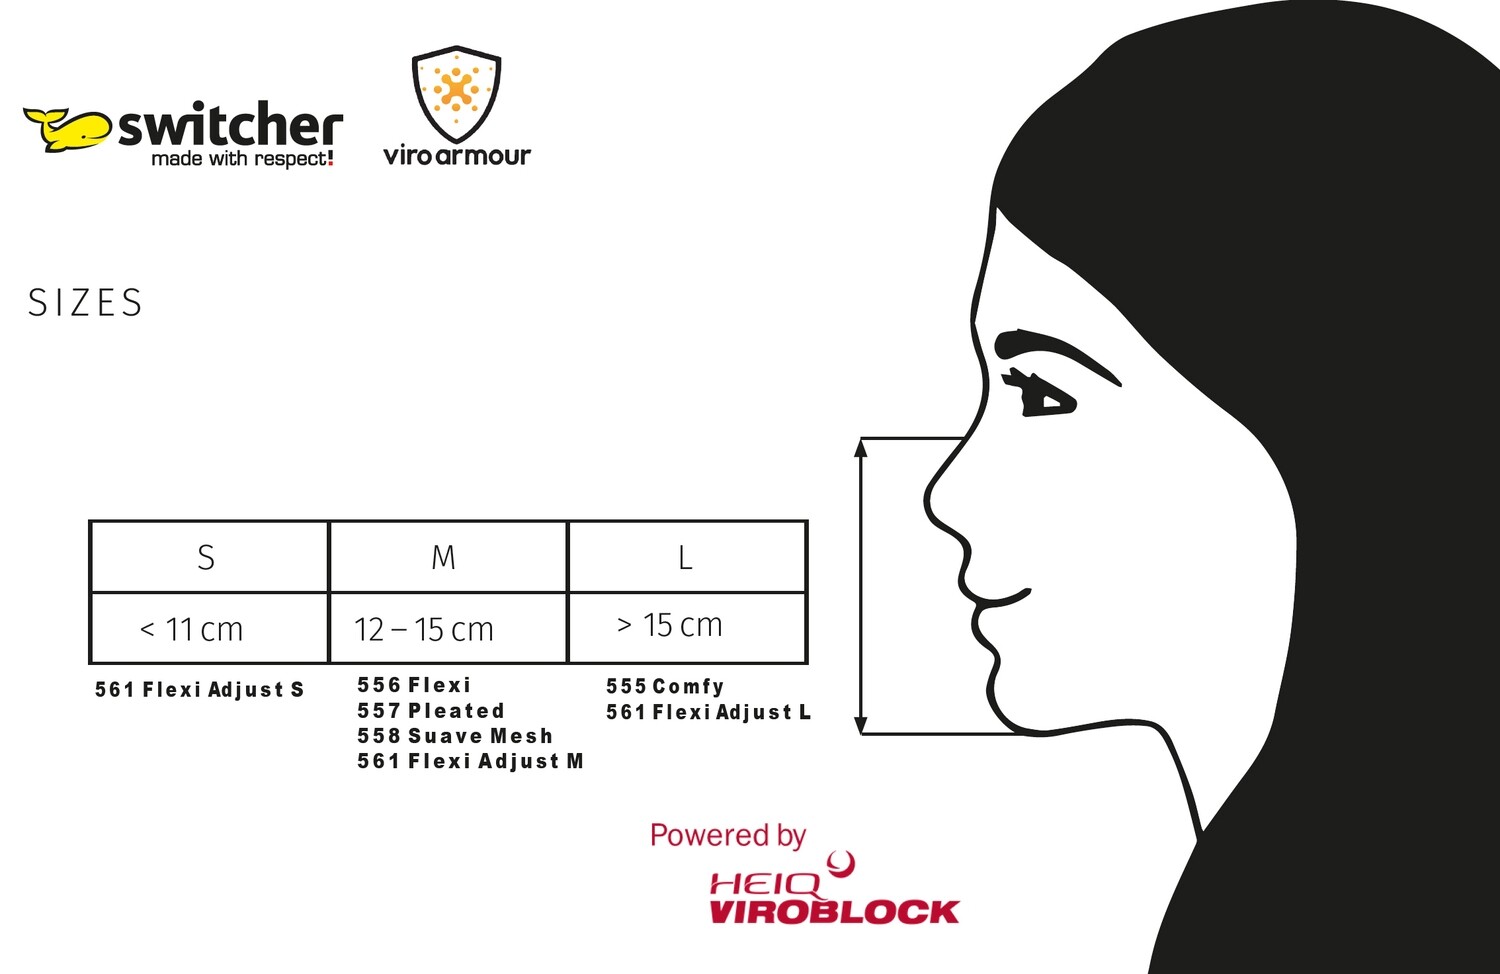 Switcher Hygieneschutzmasken powered by HeiQ Viroblock